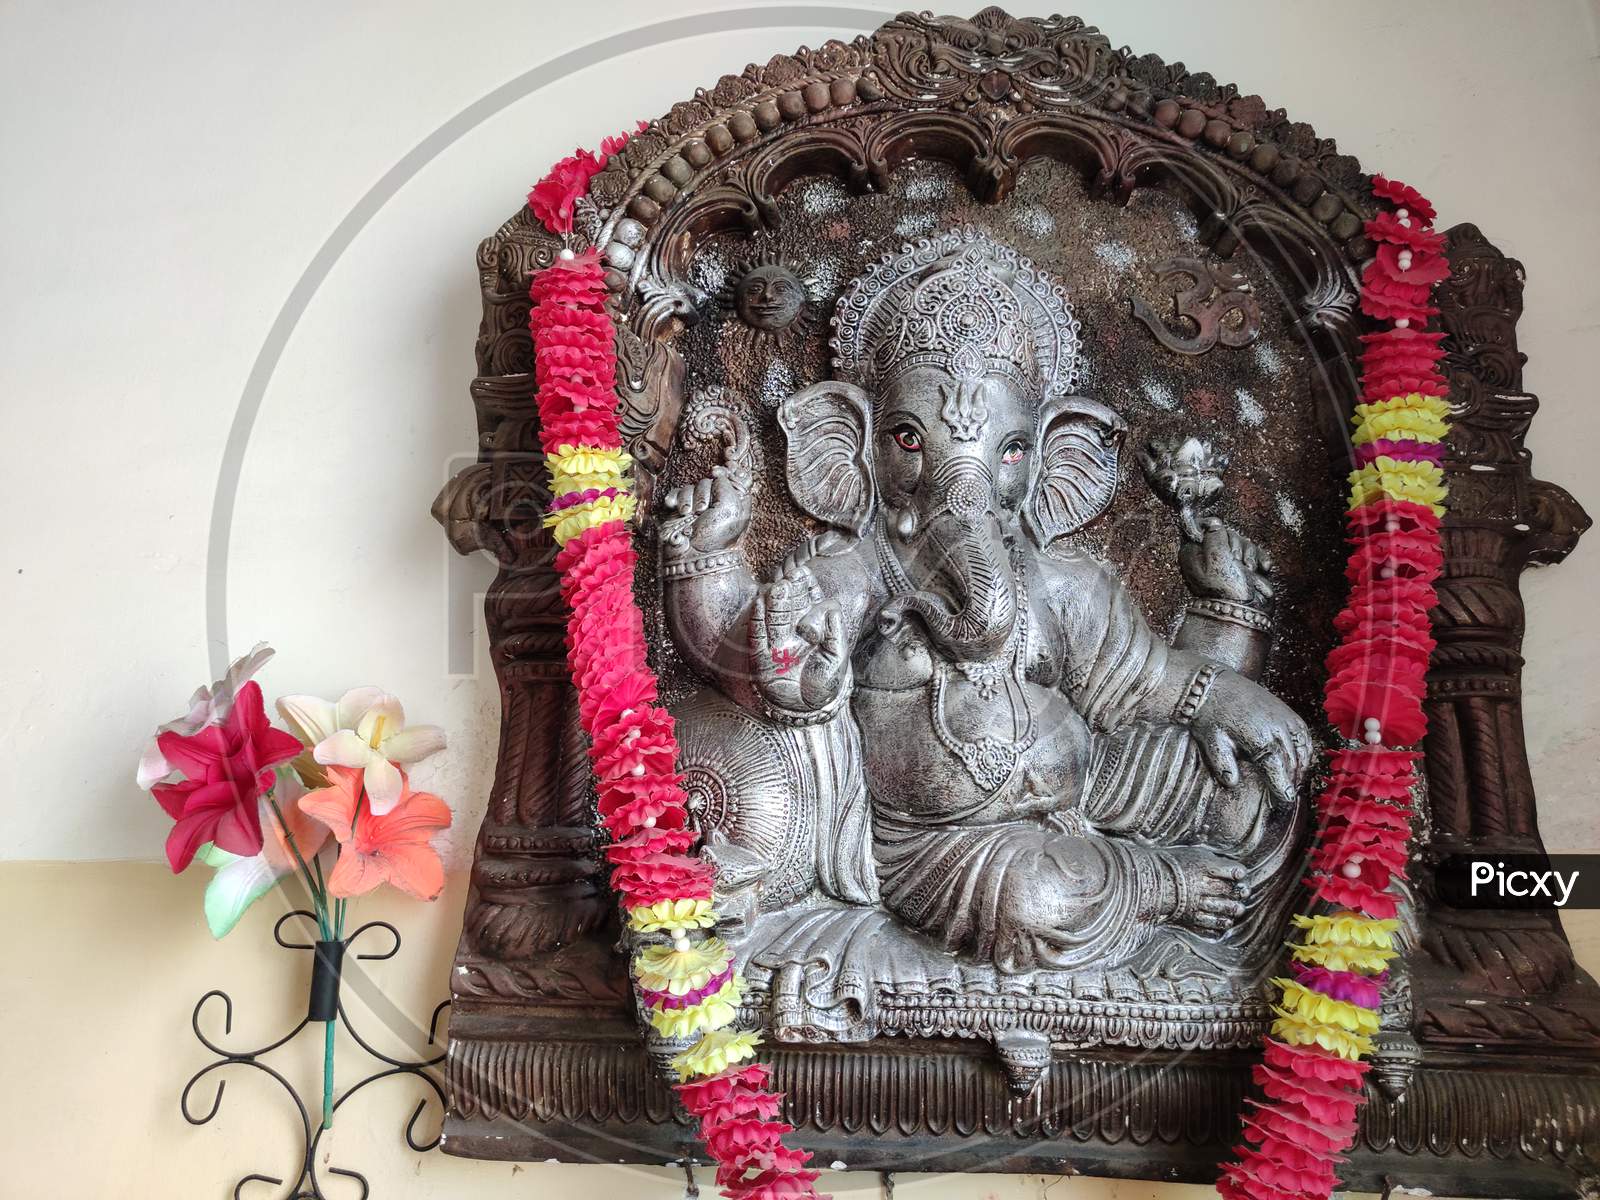 Lord Ganesha, Ganesh Chaturthi, India's famous festival